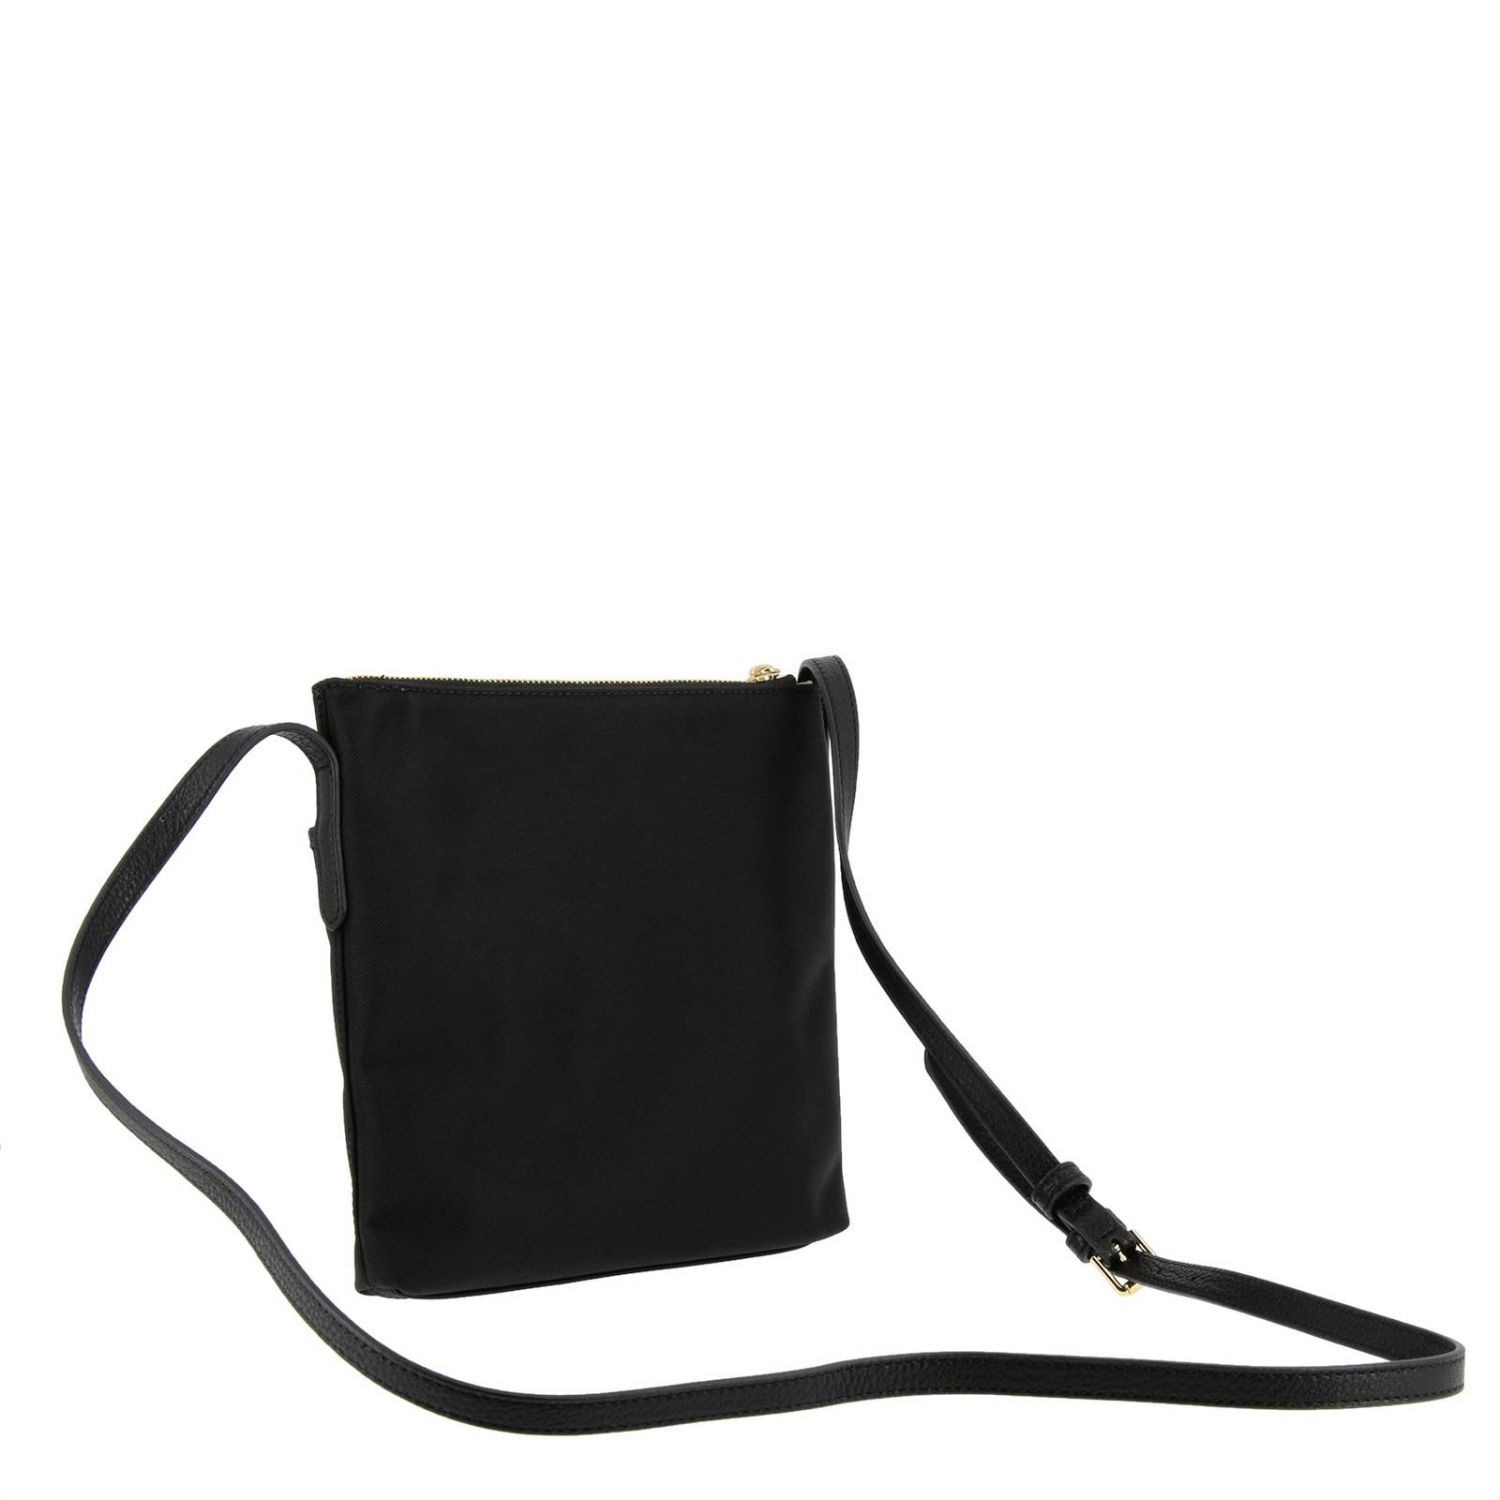 Lauren Ralph Lauren Outlet: Crossbody bags women | Crossbody Bags ...